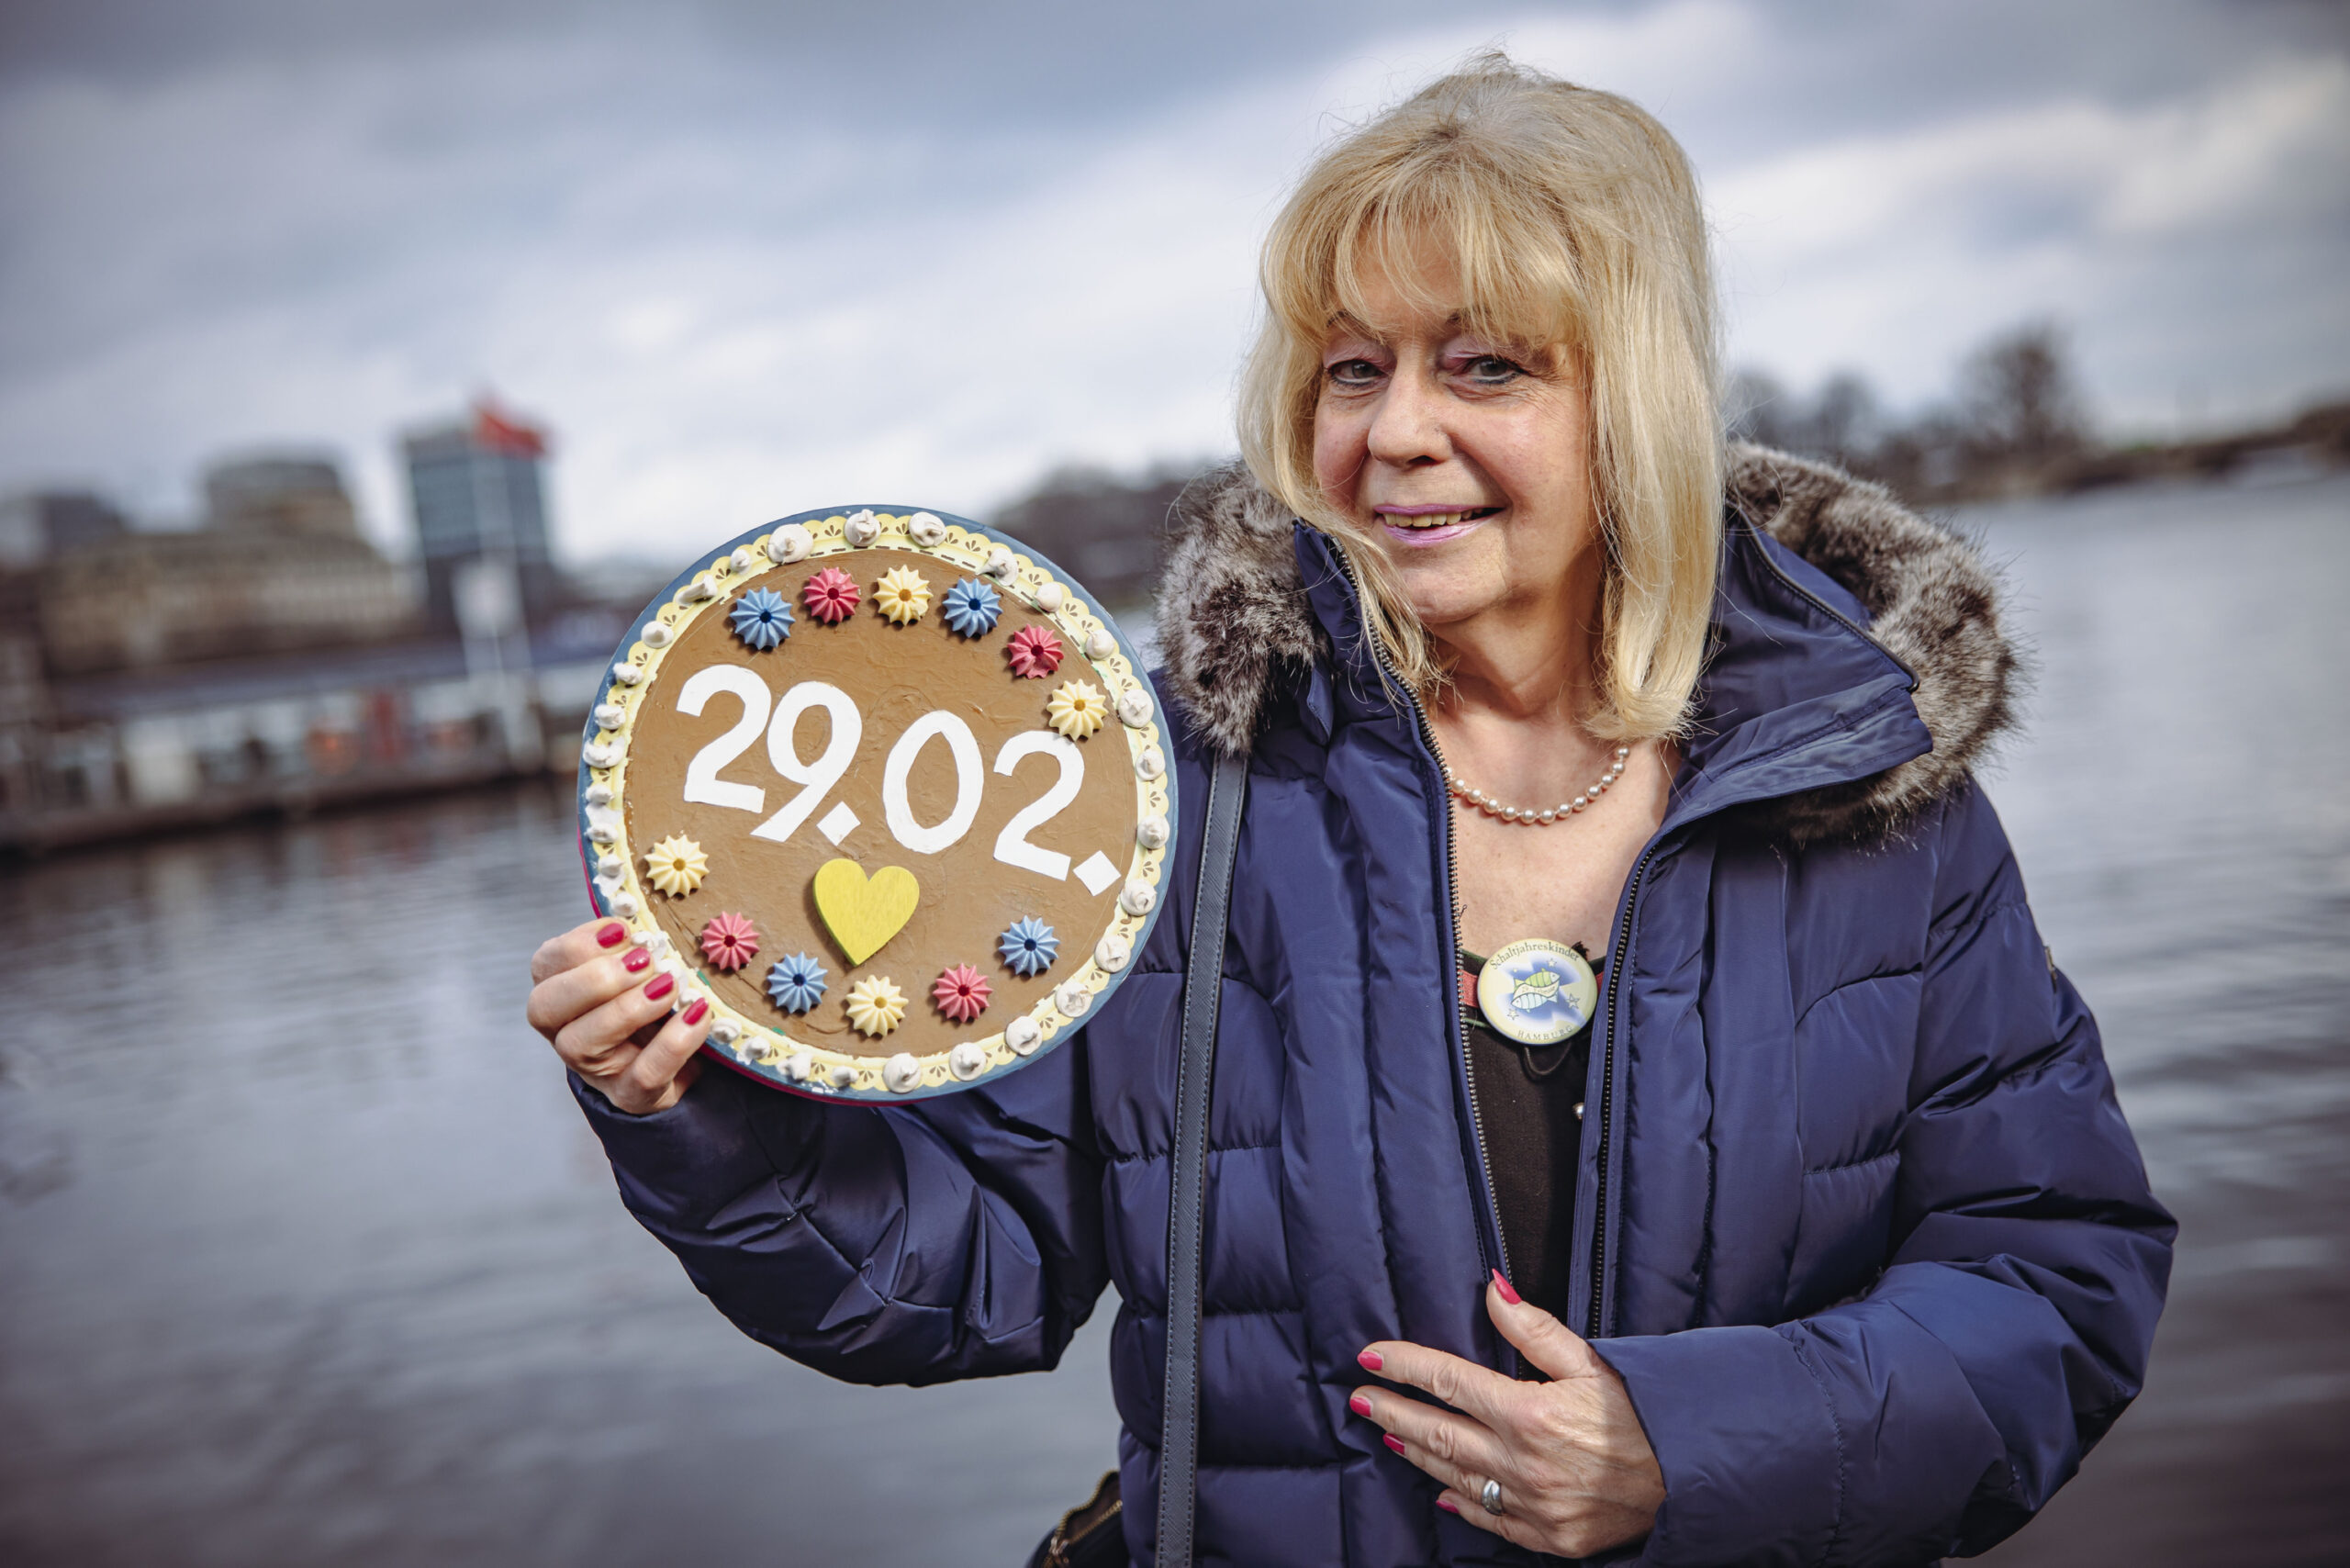 Renate Wurnig hält einen Lebkuchenkreis mit dem Datum 29.02. in der Hand.